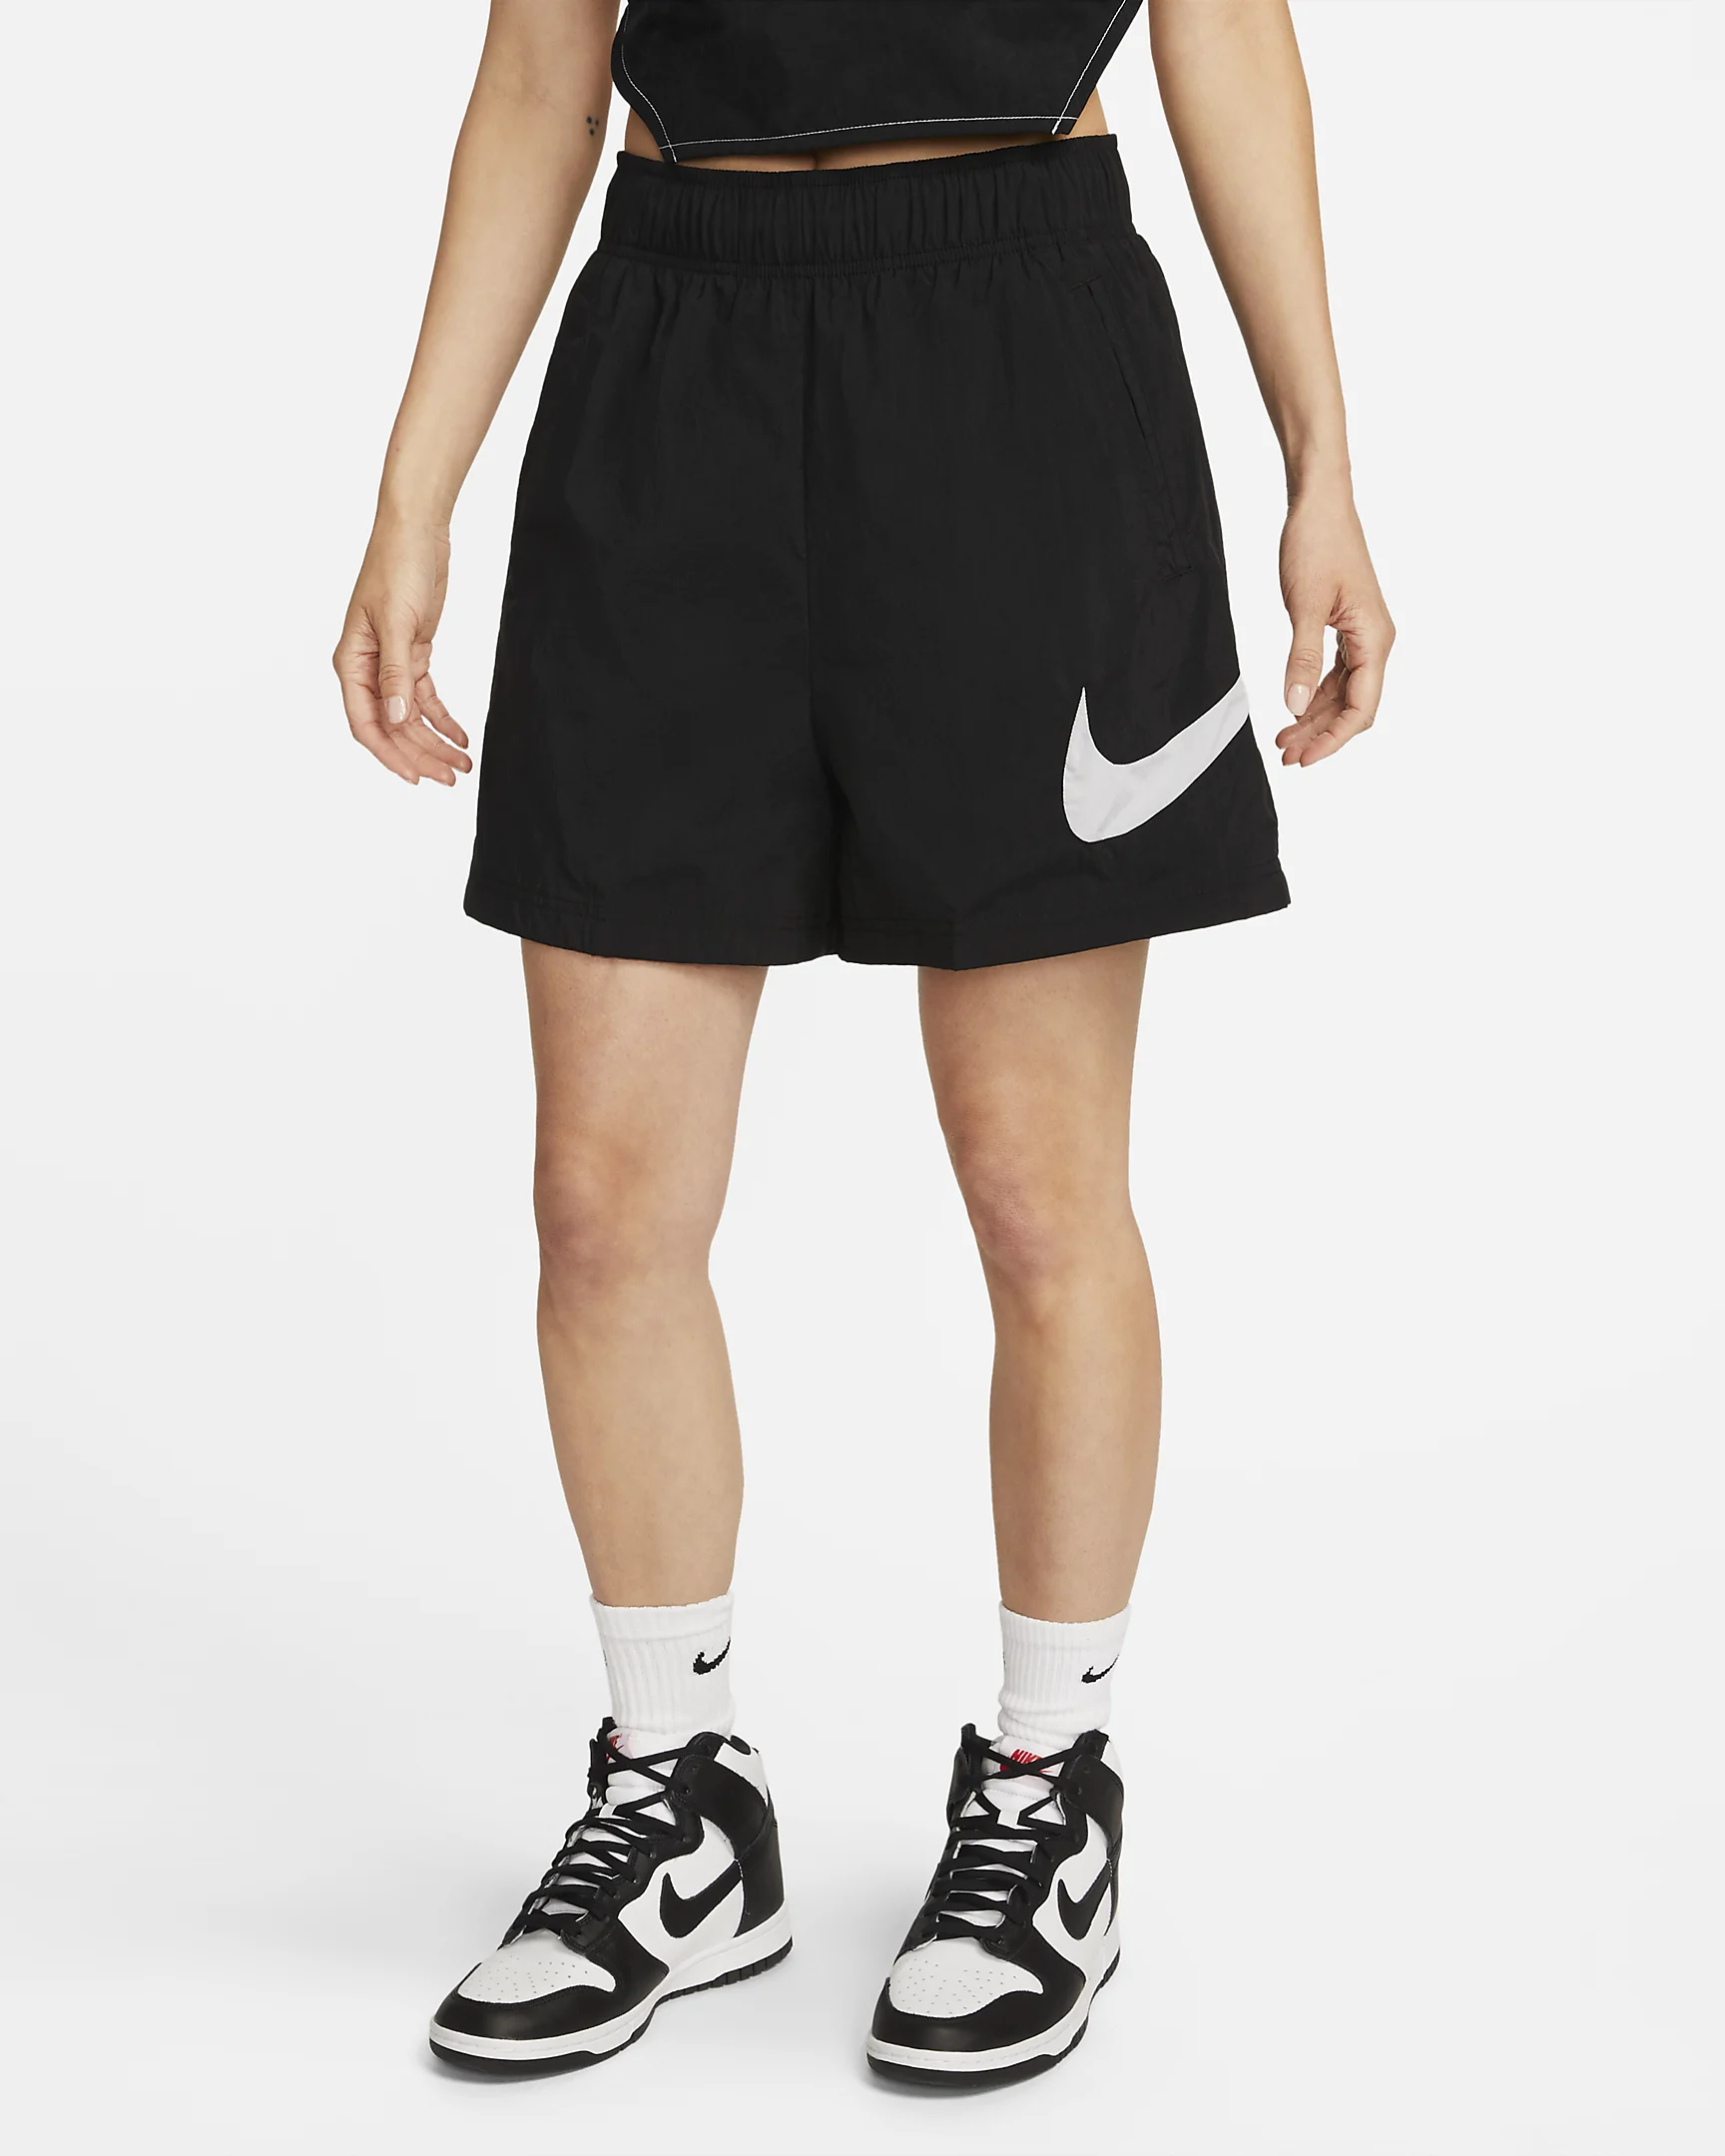 Cпортивные шорты женские Nike Essntl Wvn Hr Short Hbr DM6739-010 черные S